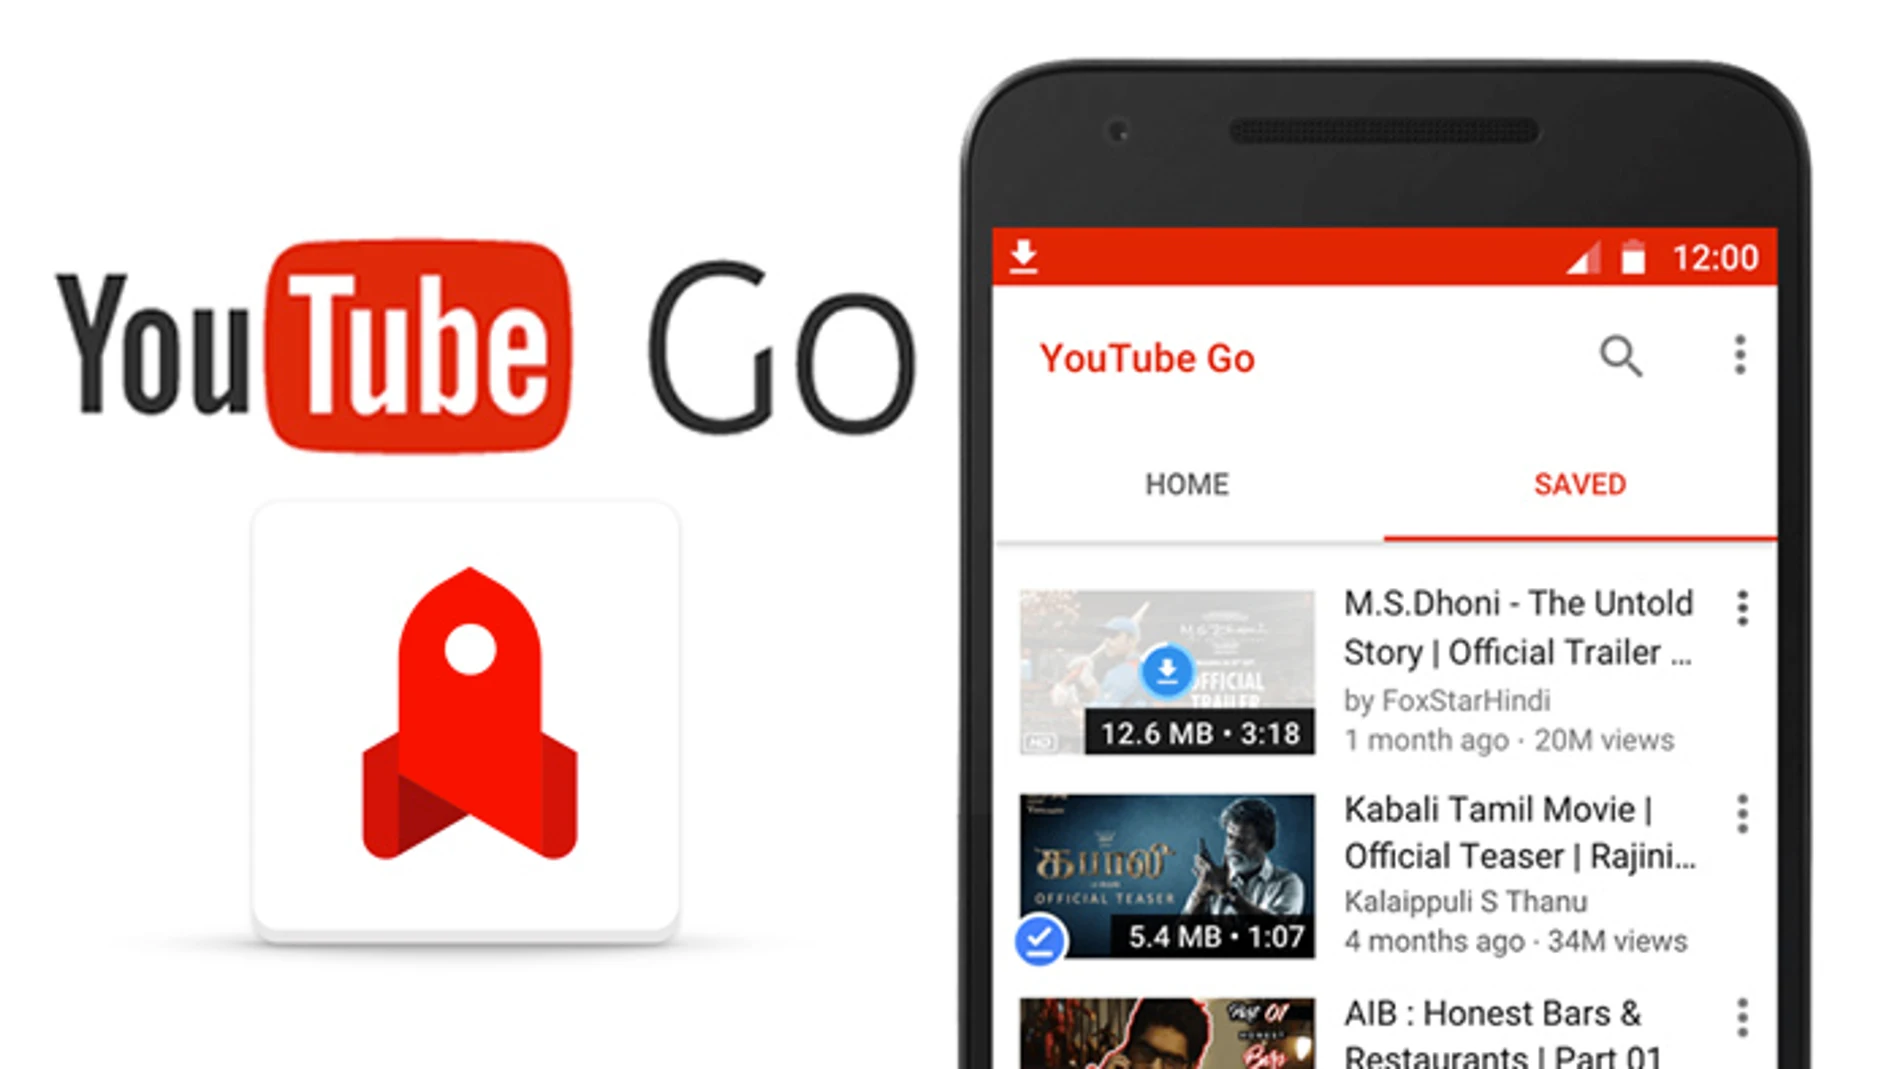 Google democratiza la reproducción de vídeos con YouTube Go